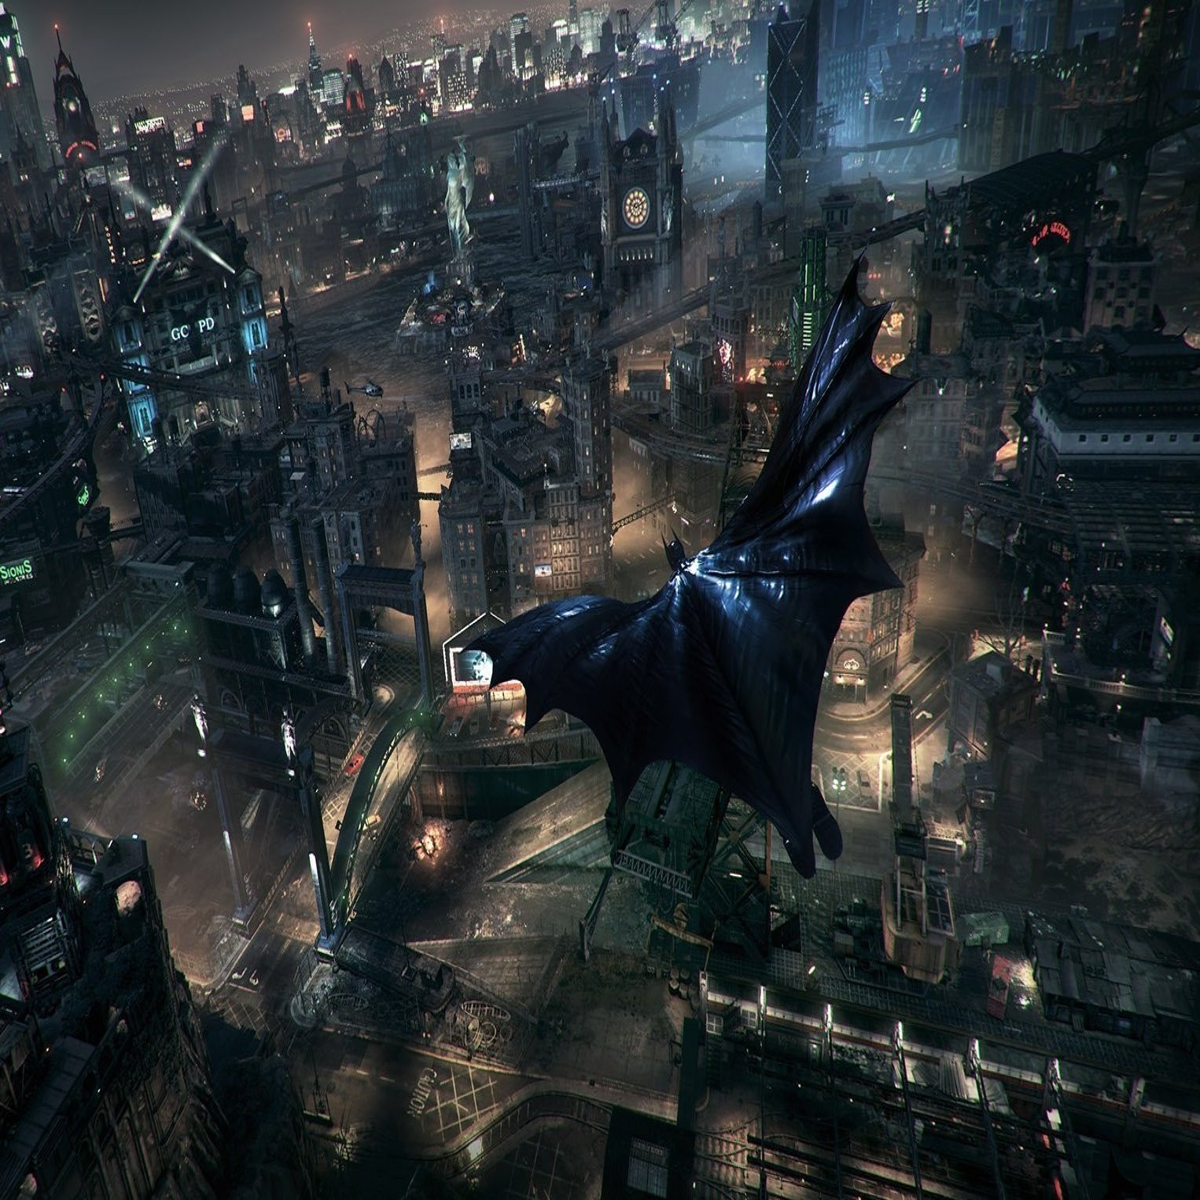 Batman: Arkham City Preview - Check Out 12 Minutes Of Batman